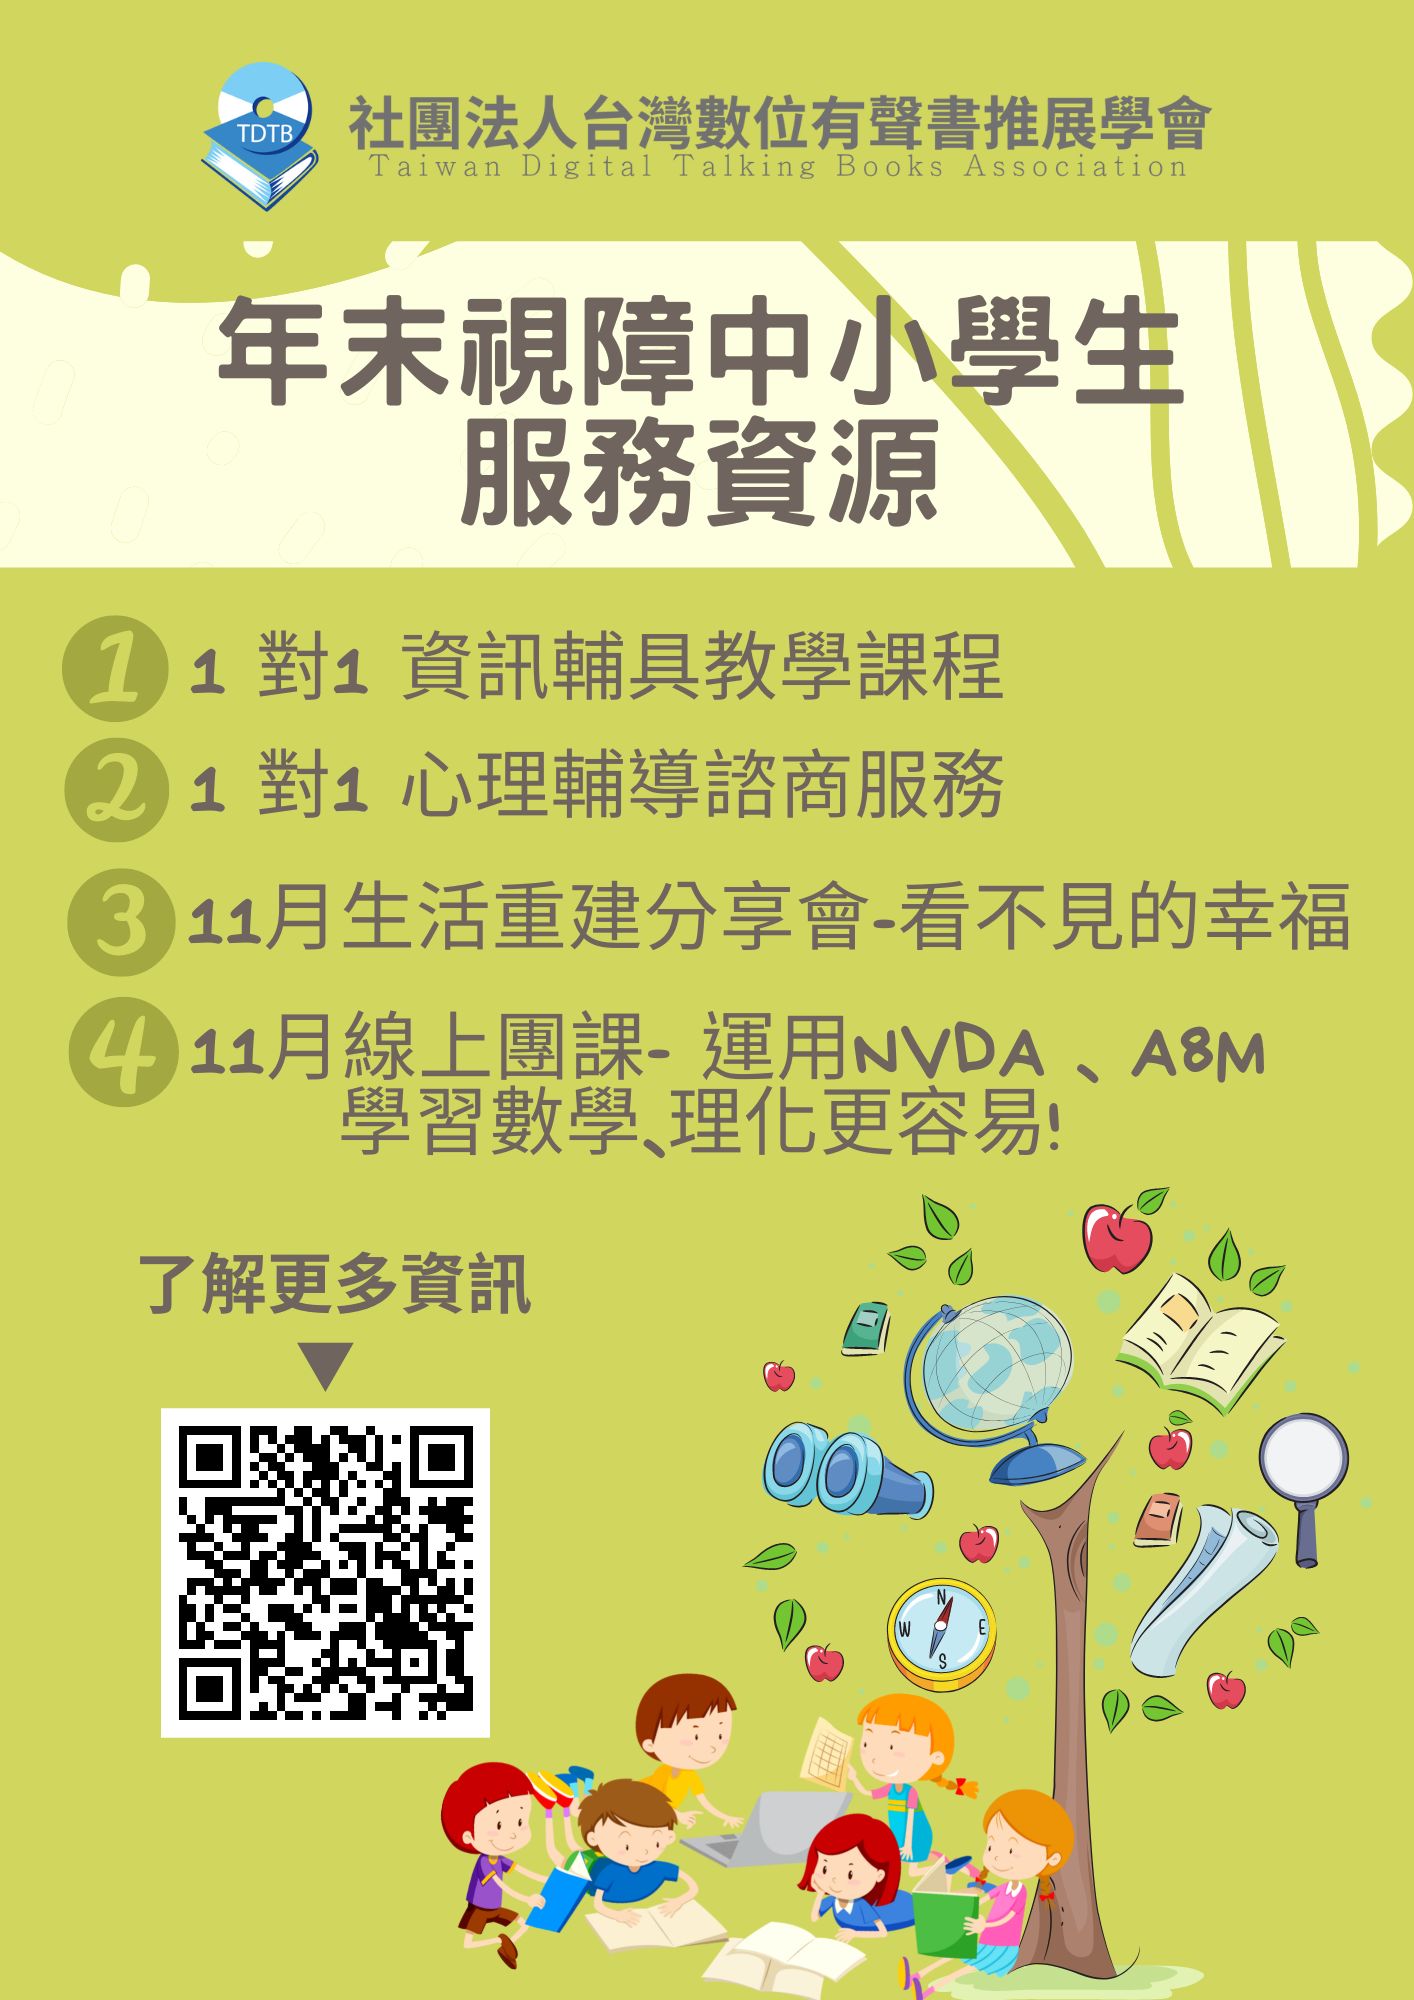 有關社團法人台灣數位有聲書推展學會年末服務資源及活動資訊